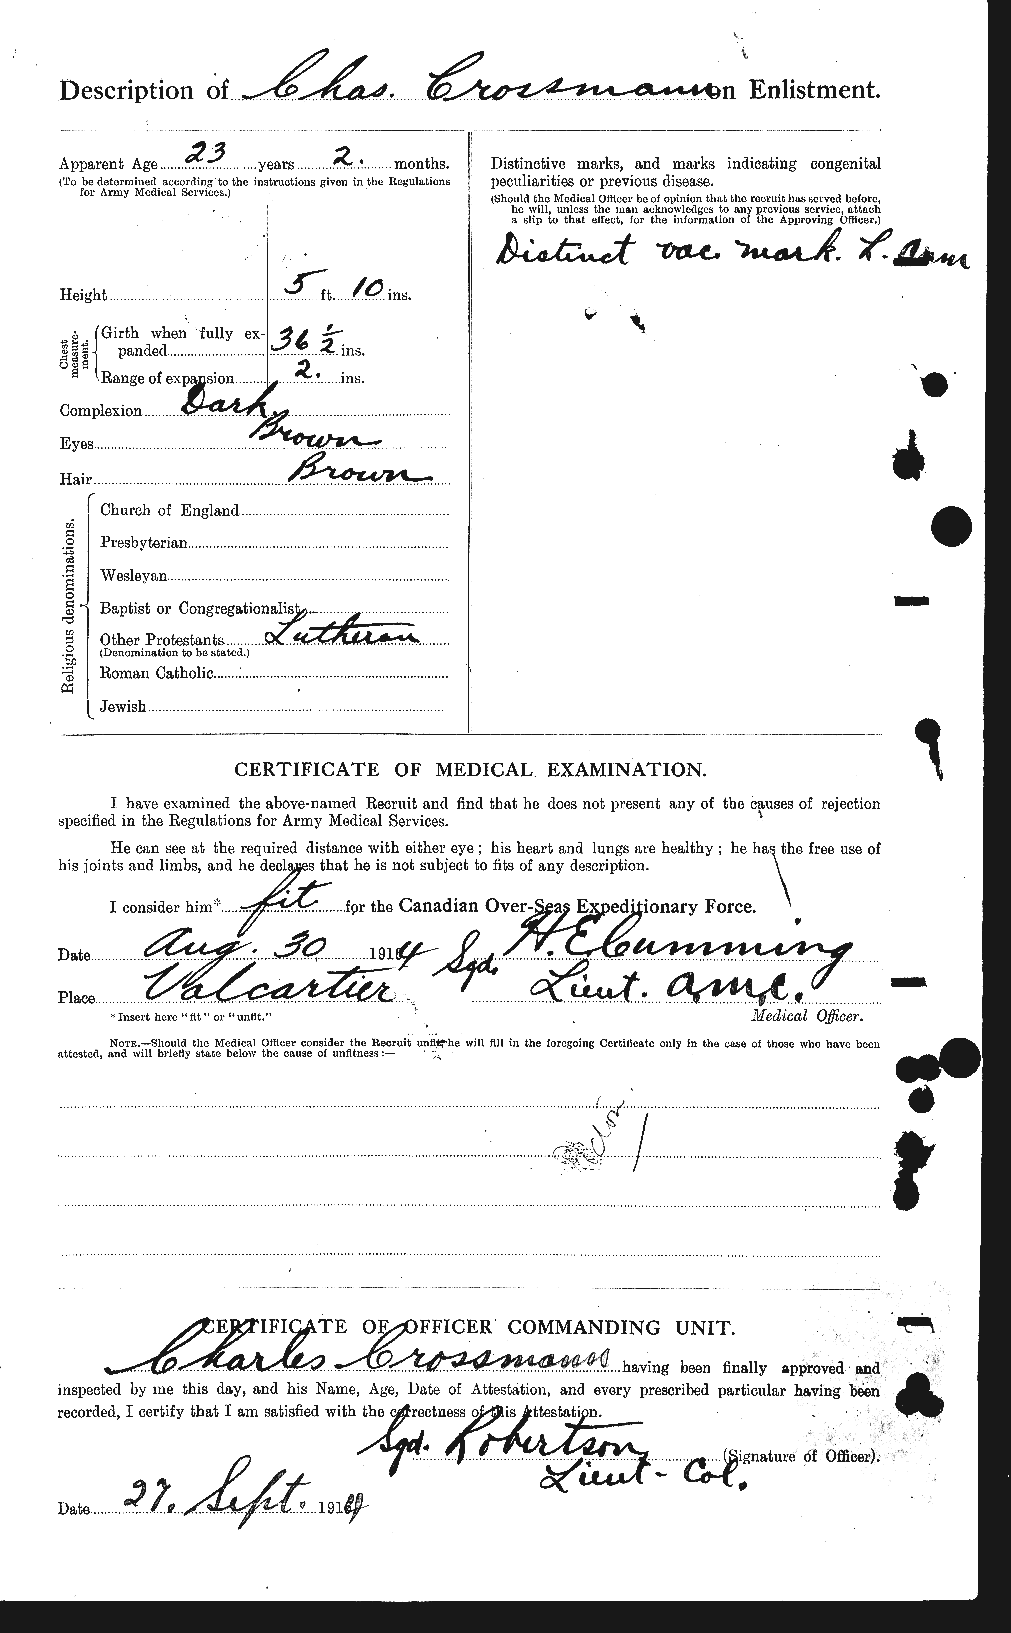 Dossiers du Personnel de la Première Guerre mondiale - CEC 066535b